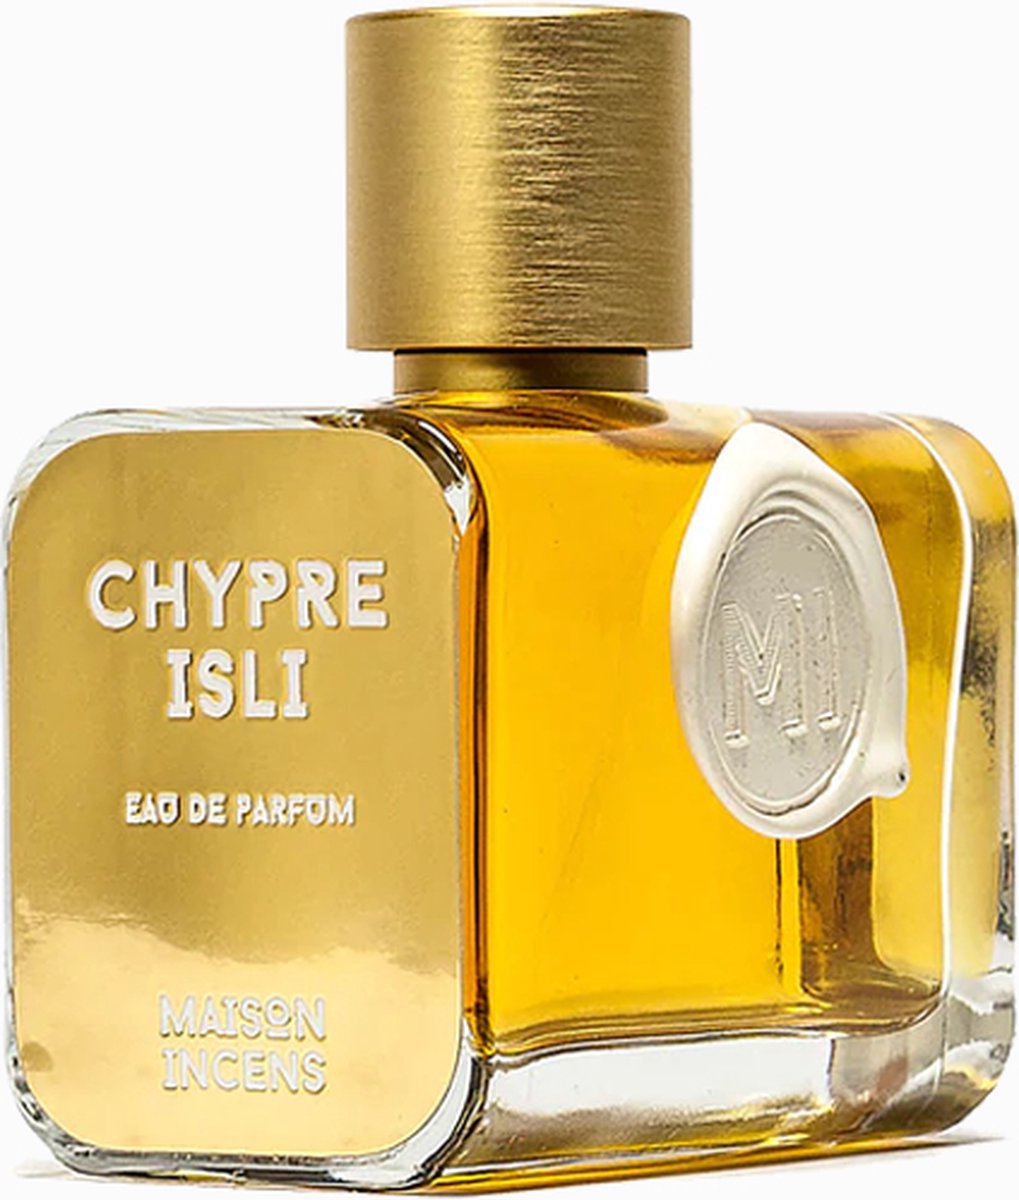 Chypre Isli Eau de Parfum